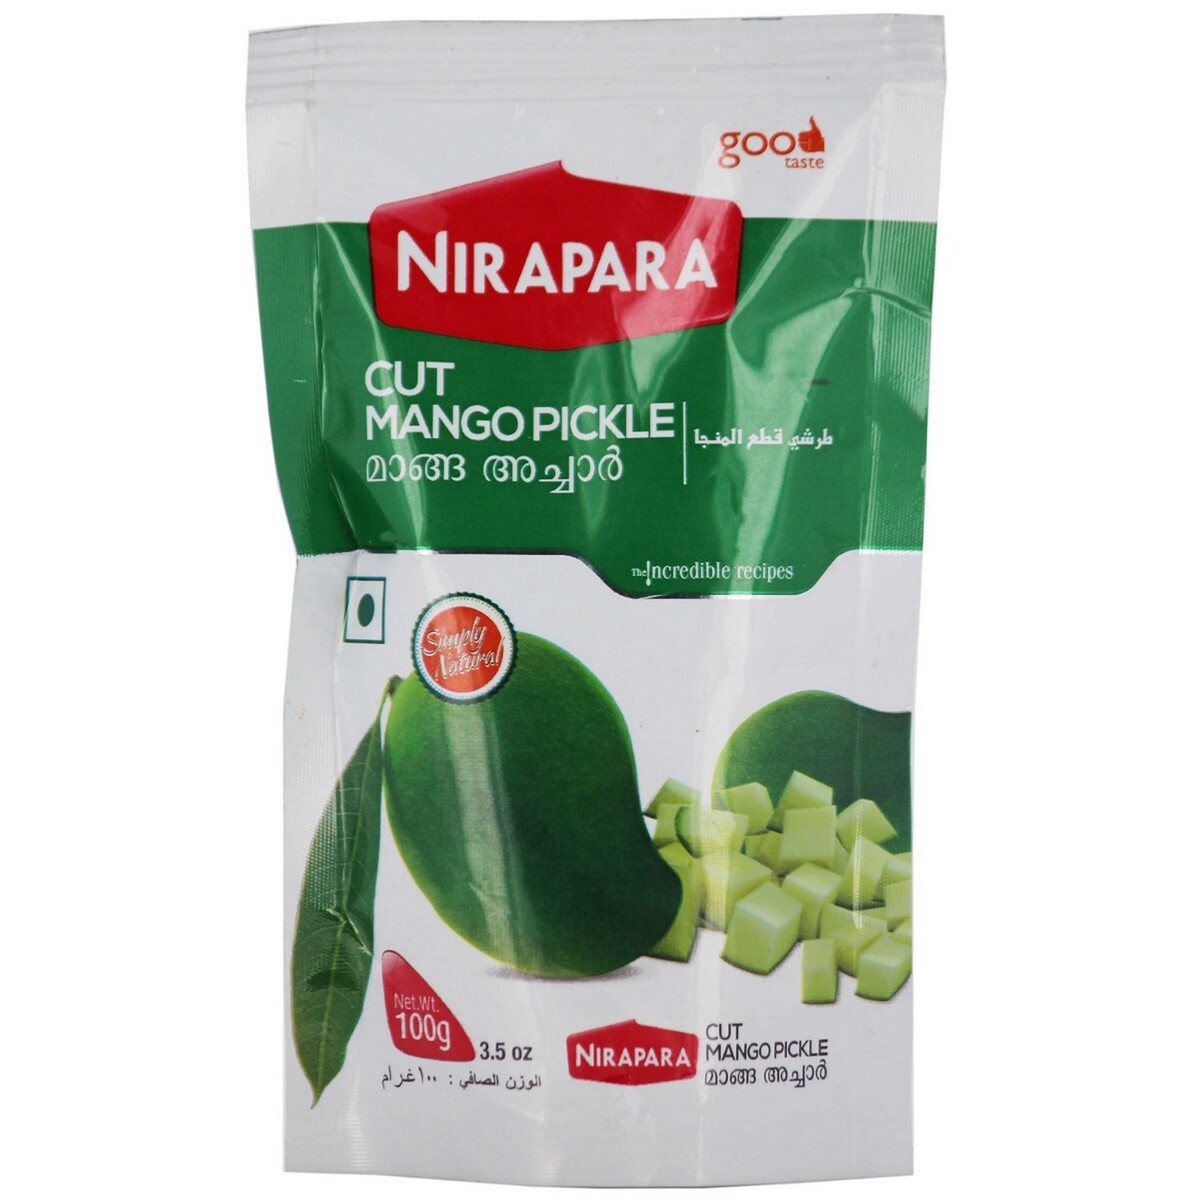 Nirapara Cut Mango Pickle 500g